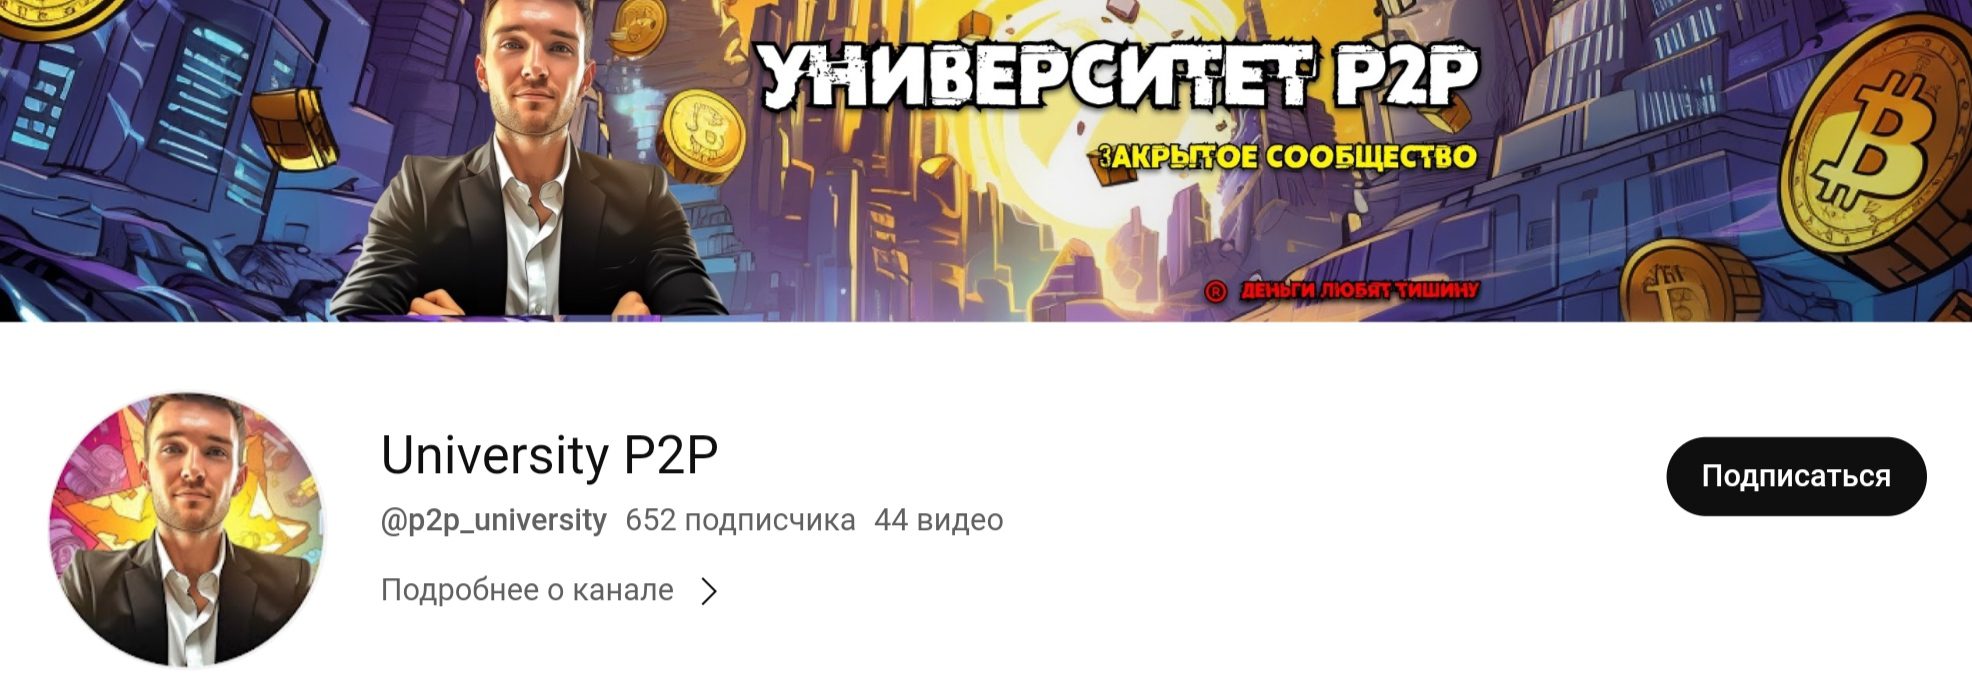 Денис Петров P2P ютуб